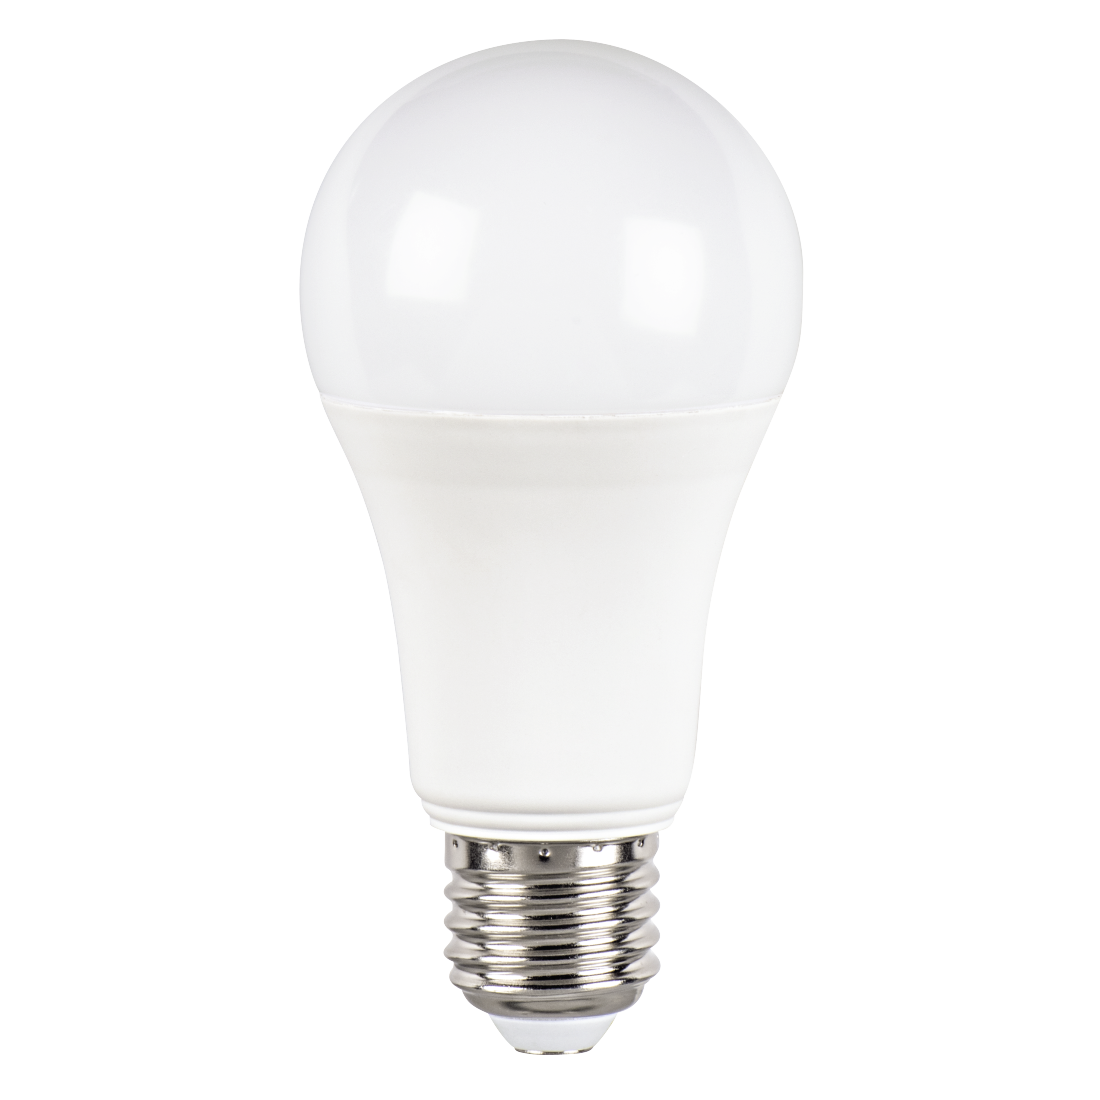 abx Druckfähige Abbildung - Xavax, LED-Lampe, E27, 1521lm ersetzt 100W, Glühlampe, Tageslicht